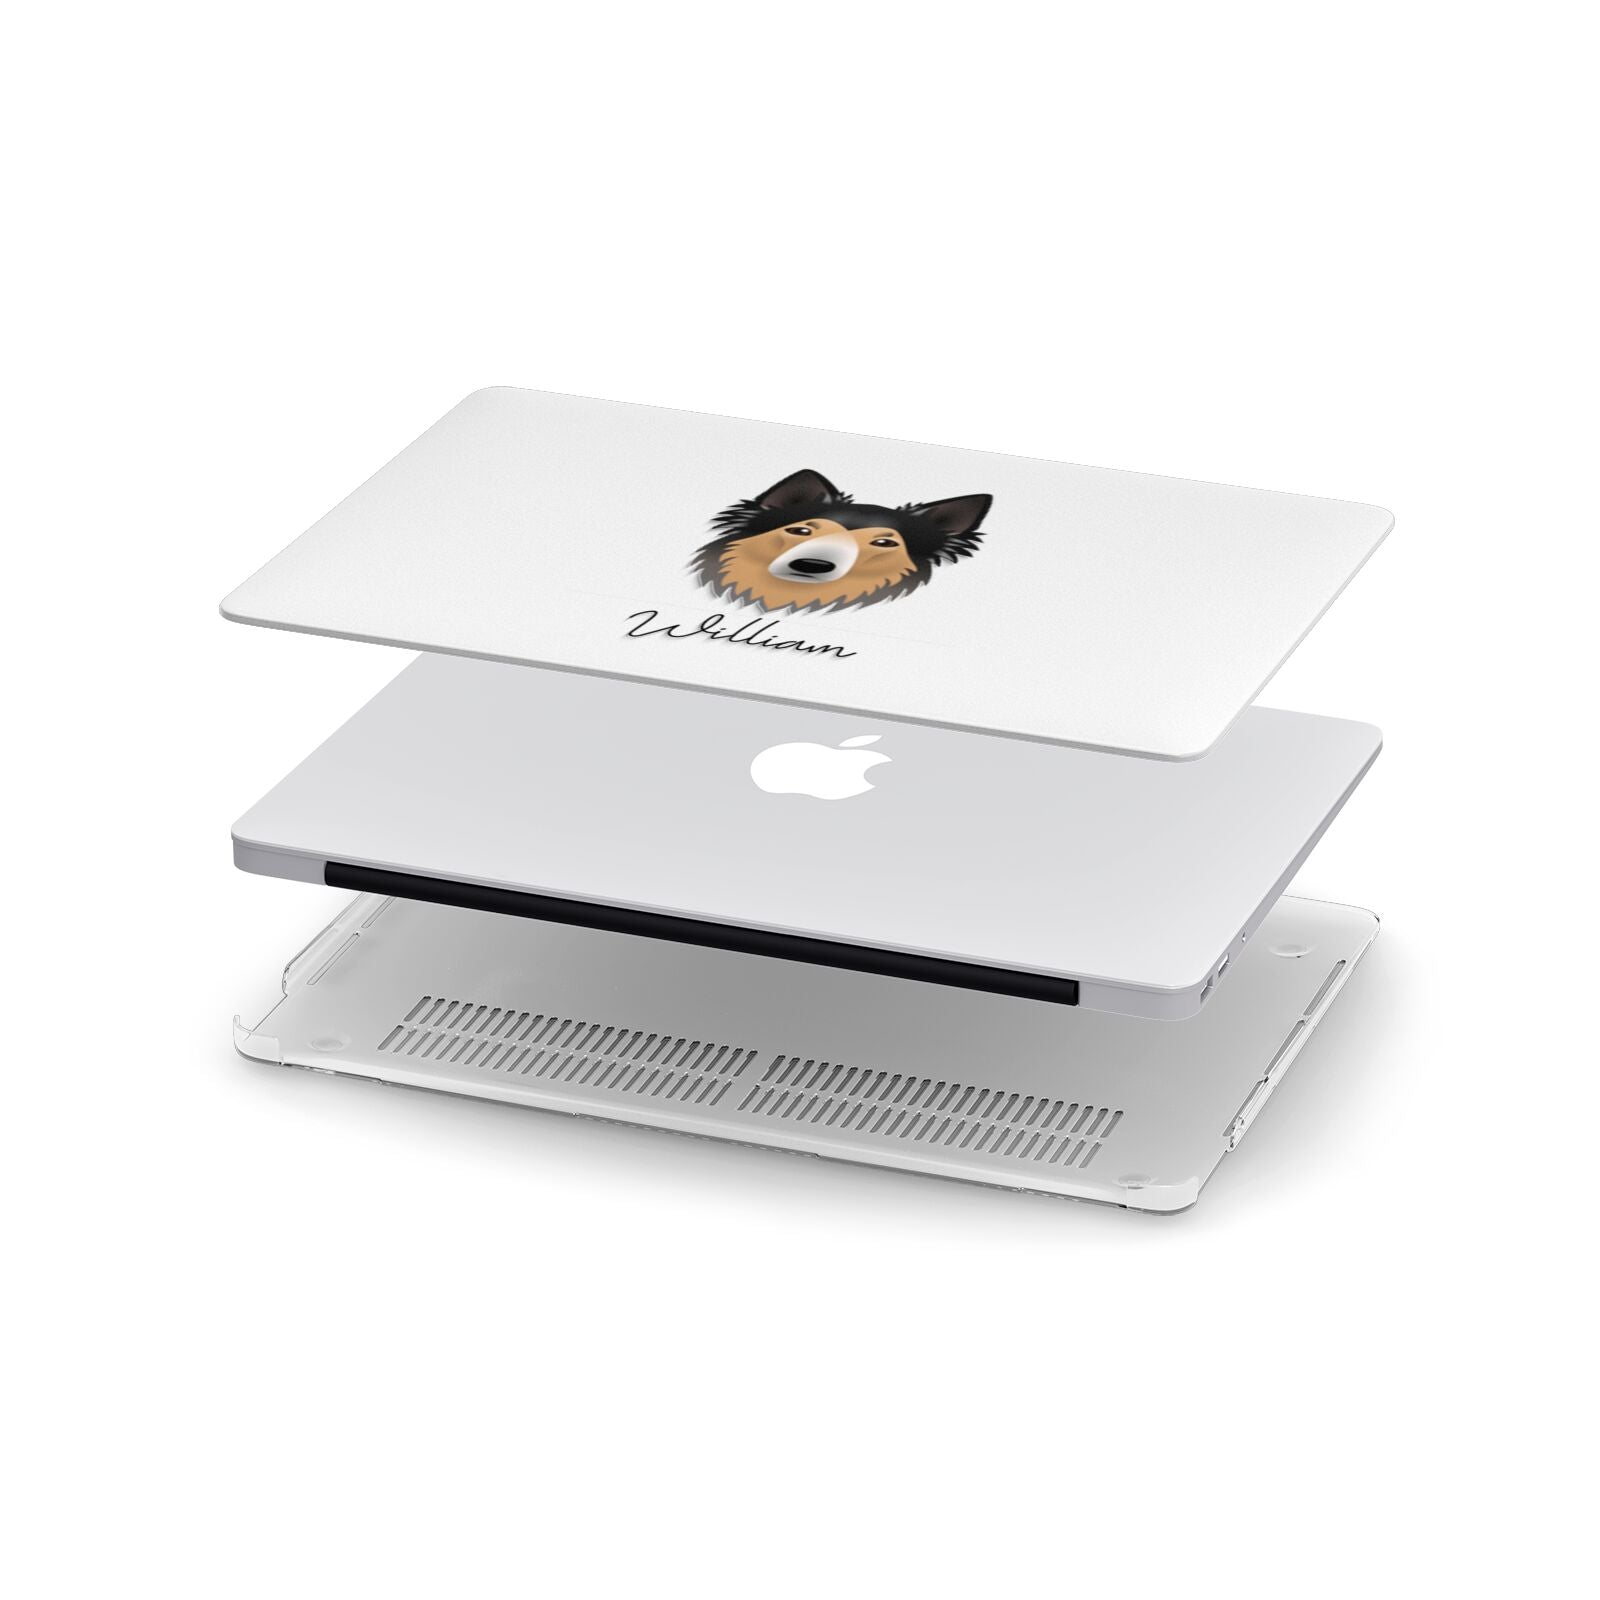 Shollie Personalised Apple MacBook Case in Detail